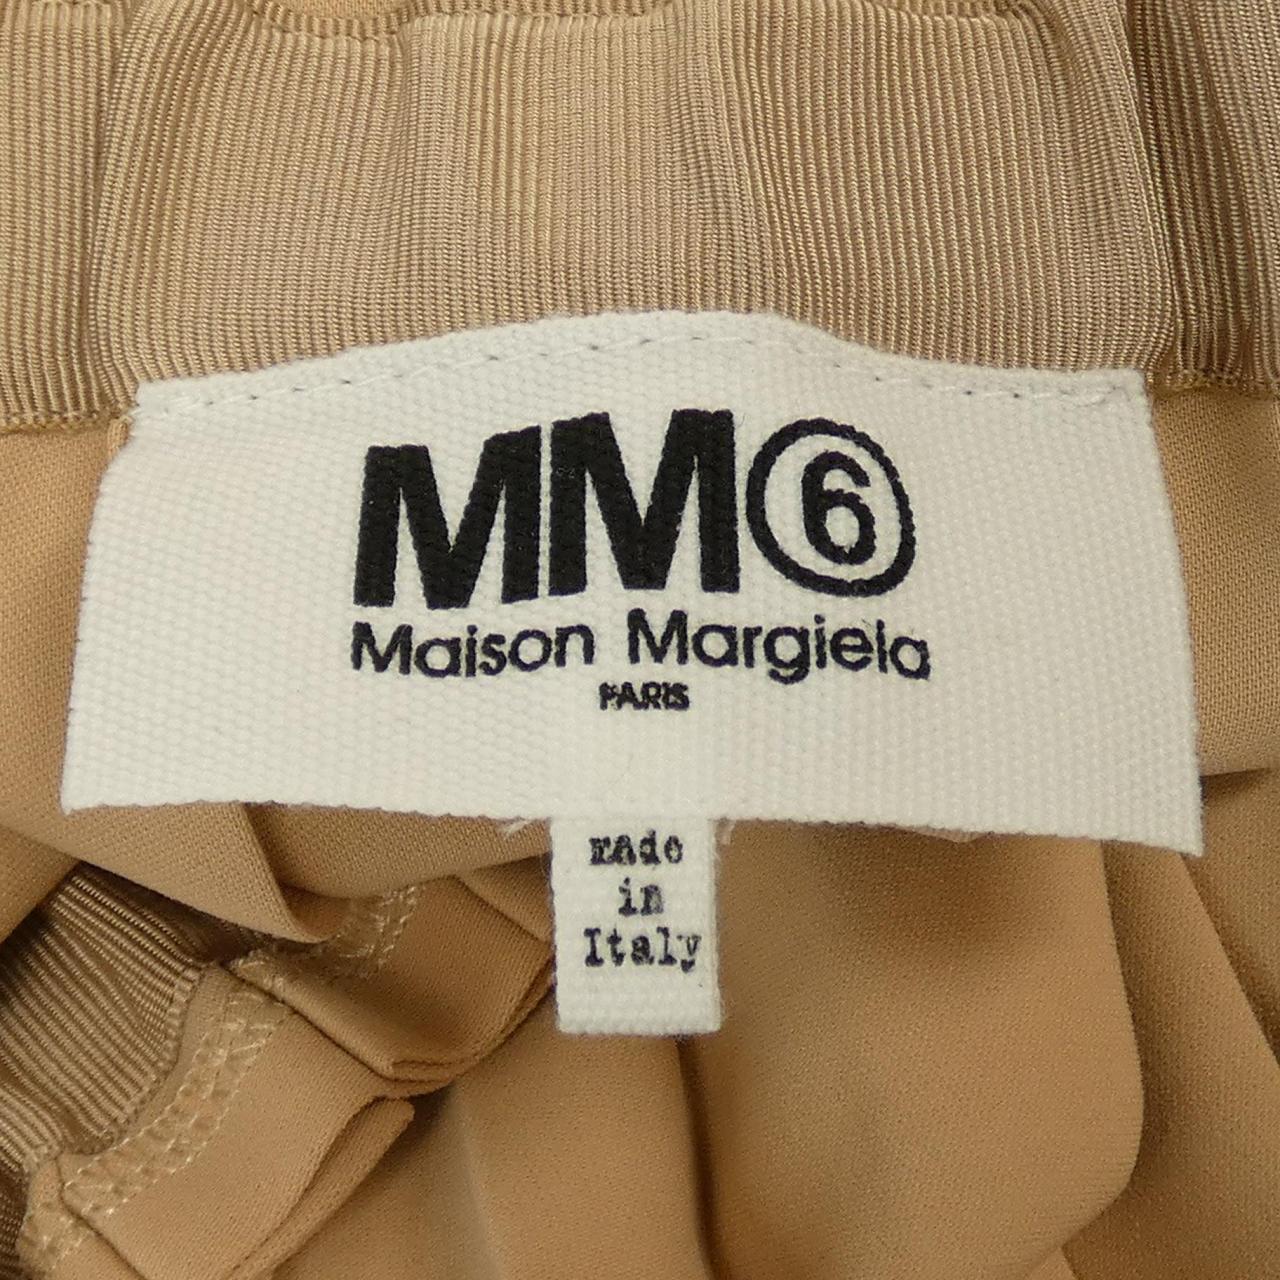 MM6 MM6 Skirt